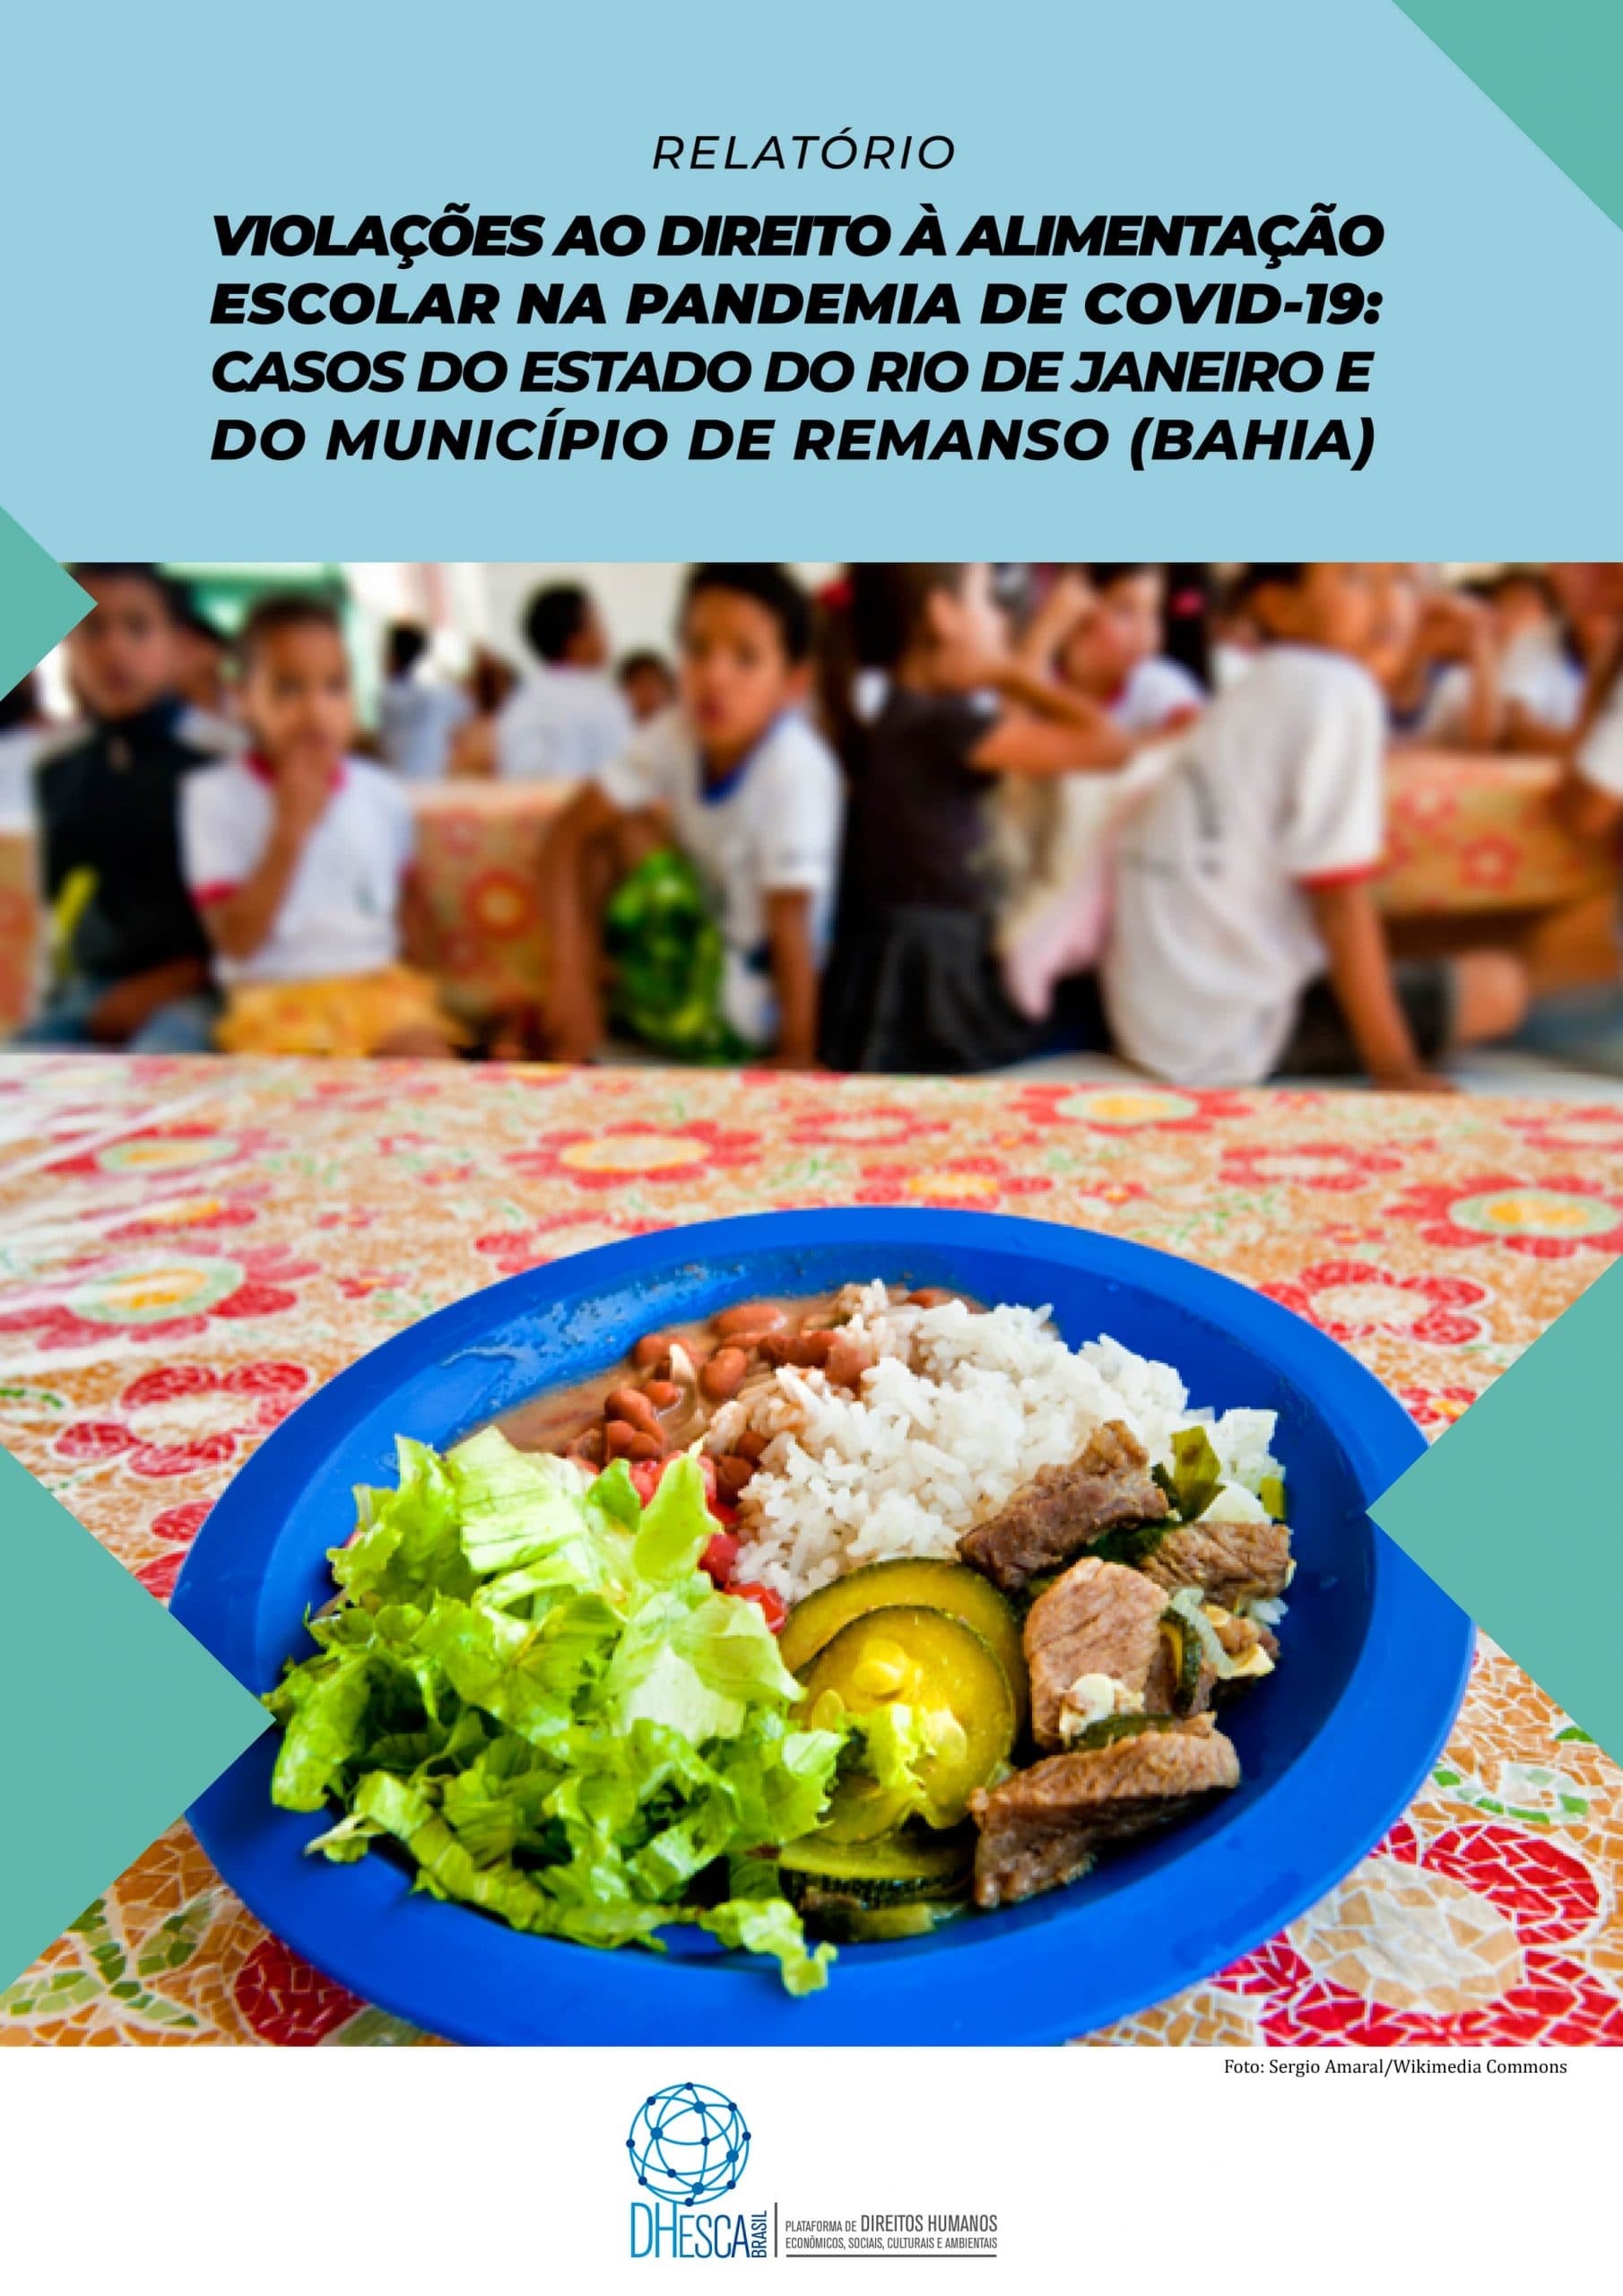 Violações ao direito à alimentação escolar durante a pandemia são objeto de relatório